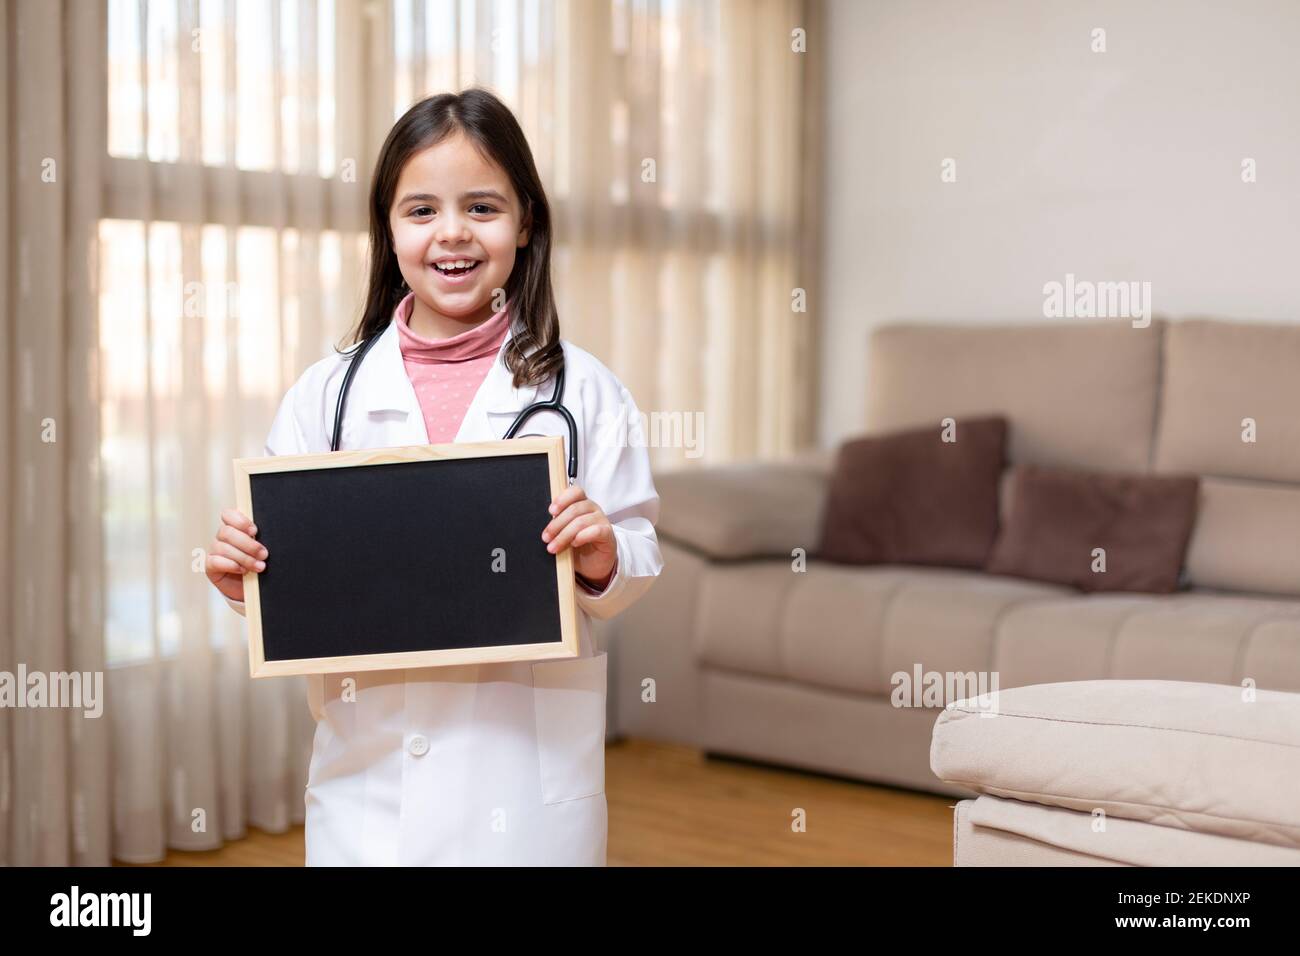 Petit enfant souriant dans l'uniforme du médecin tenant un tableau noir à la maison. Espace pour le texte. Banque D'Images